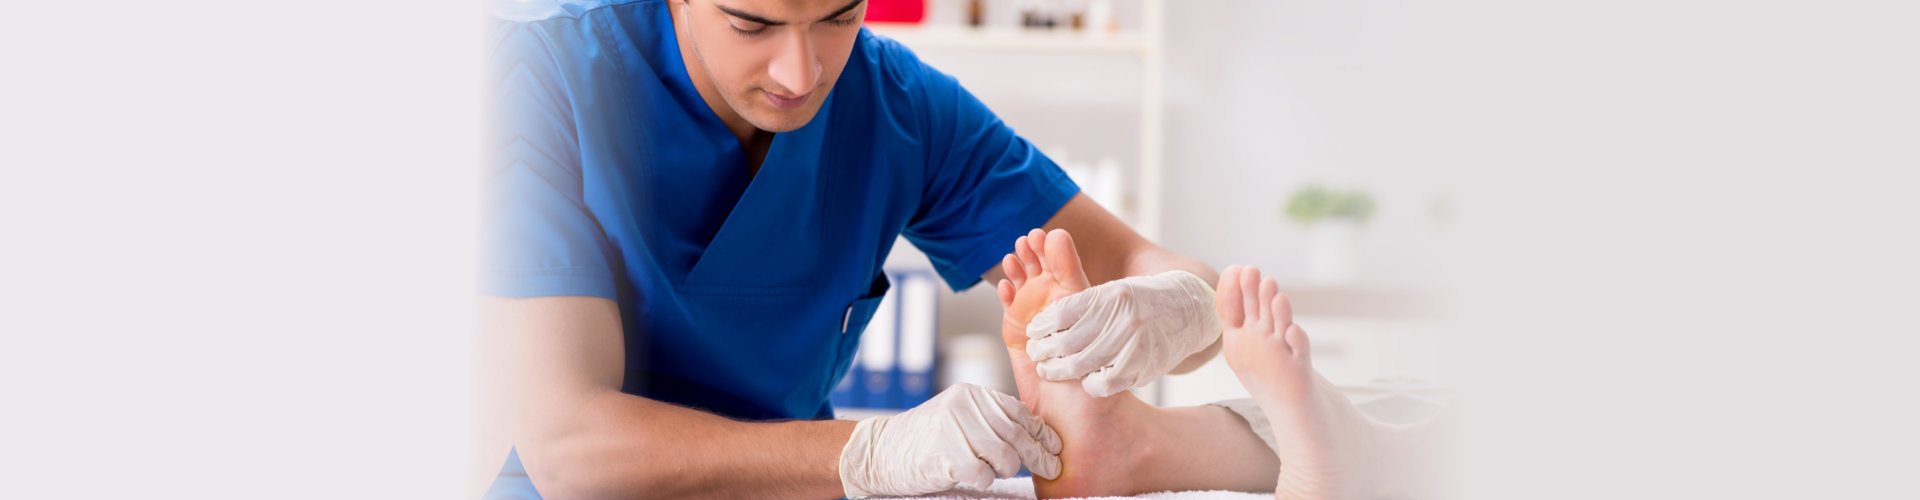 health worker massaging feet of patient